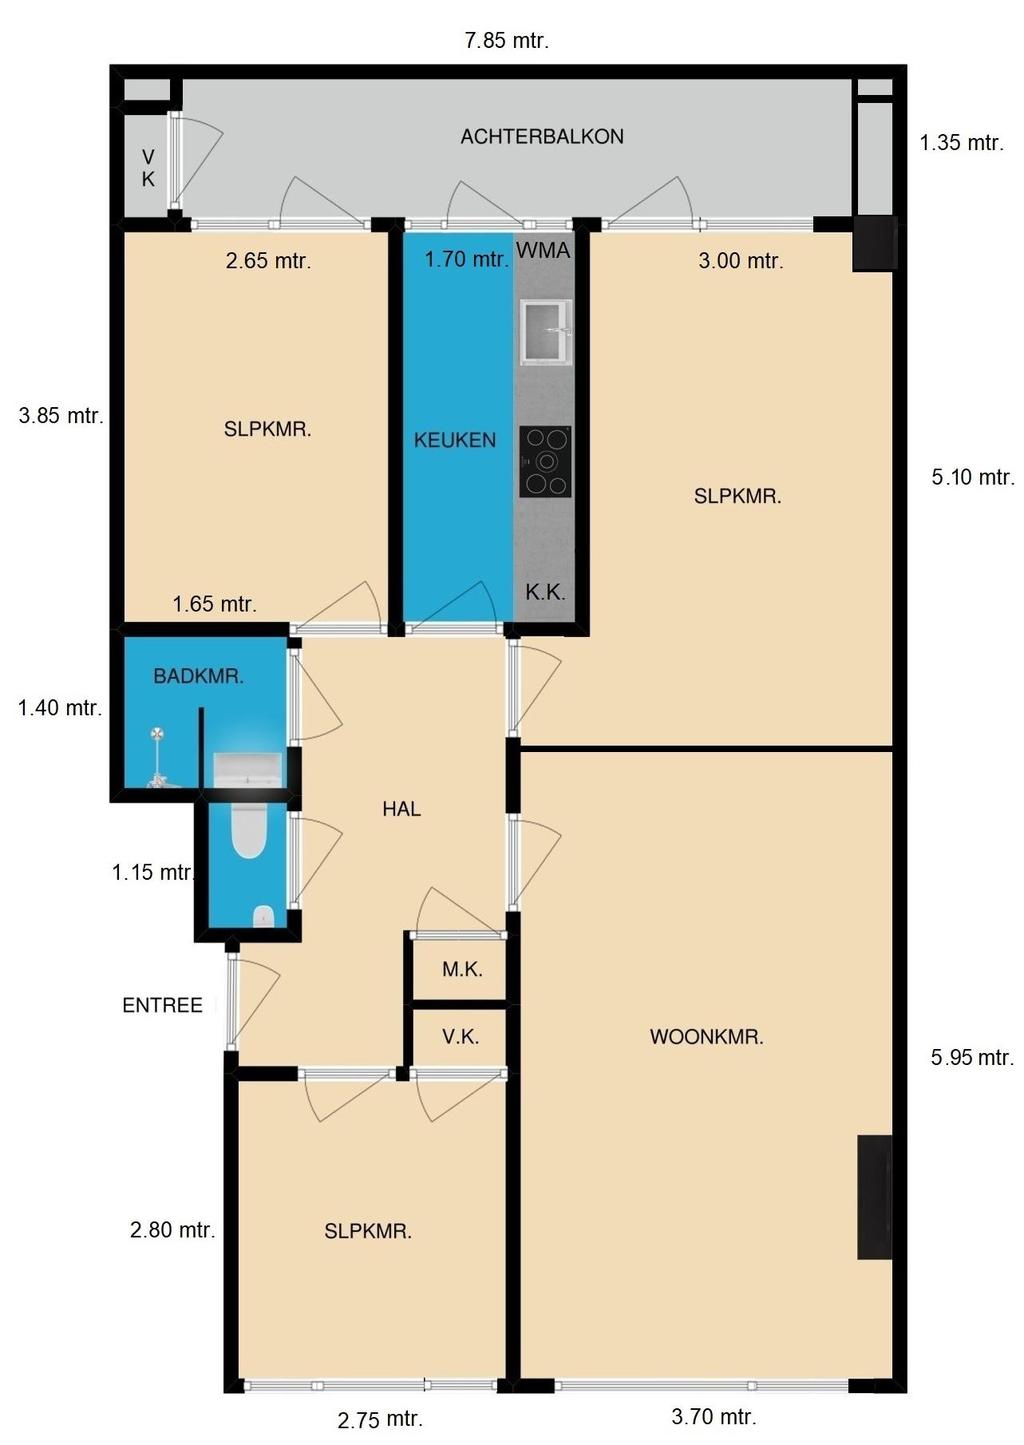 Woonruimte(n) 80 m² Goeverneurkade 98 te Voorburg Overige inpandige ruimte(n) 0 m² De brochure en plattegronden zijn met de grootste zorg samengesteld en bedoeld voor promotie van vastgoed en zijn